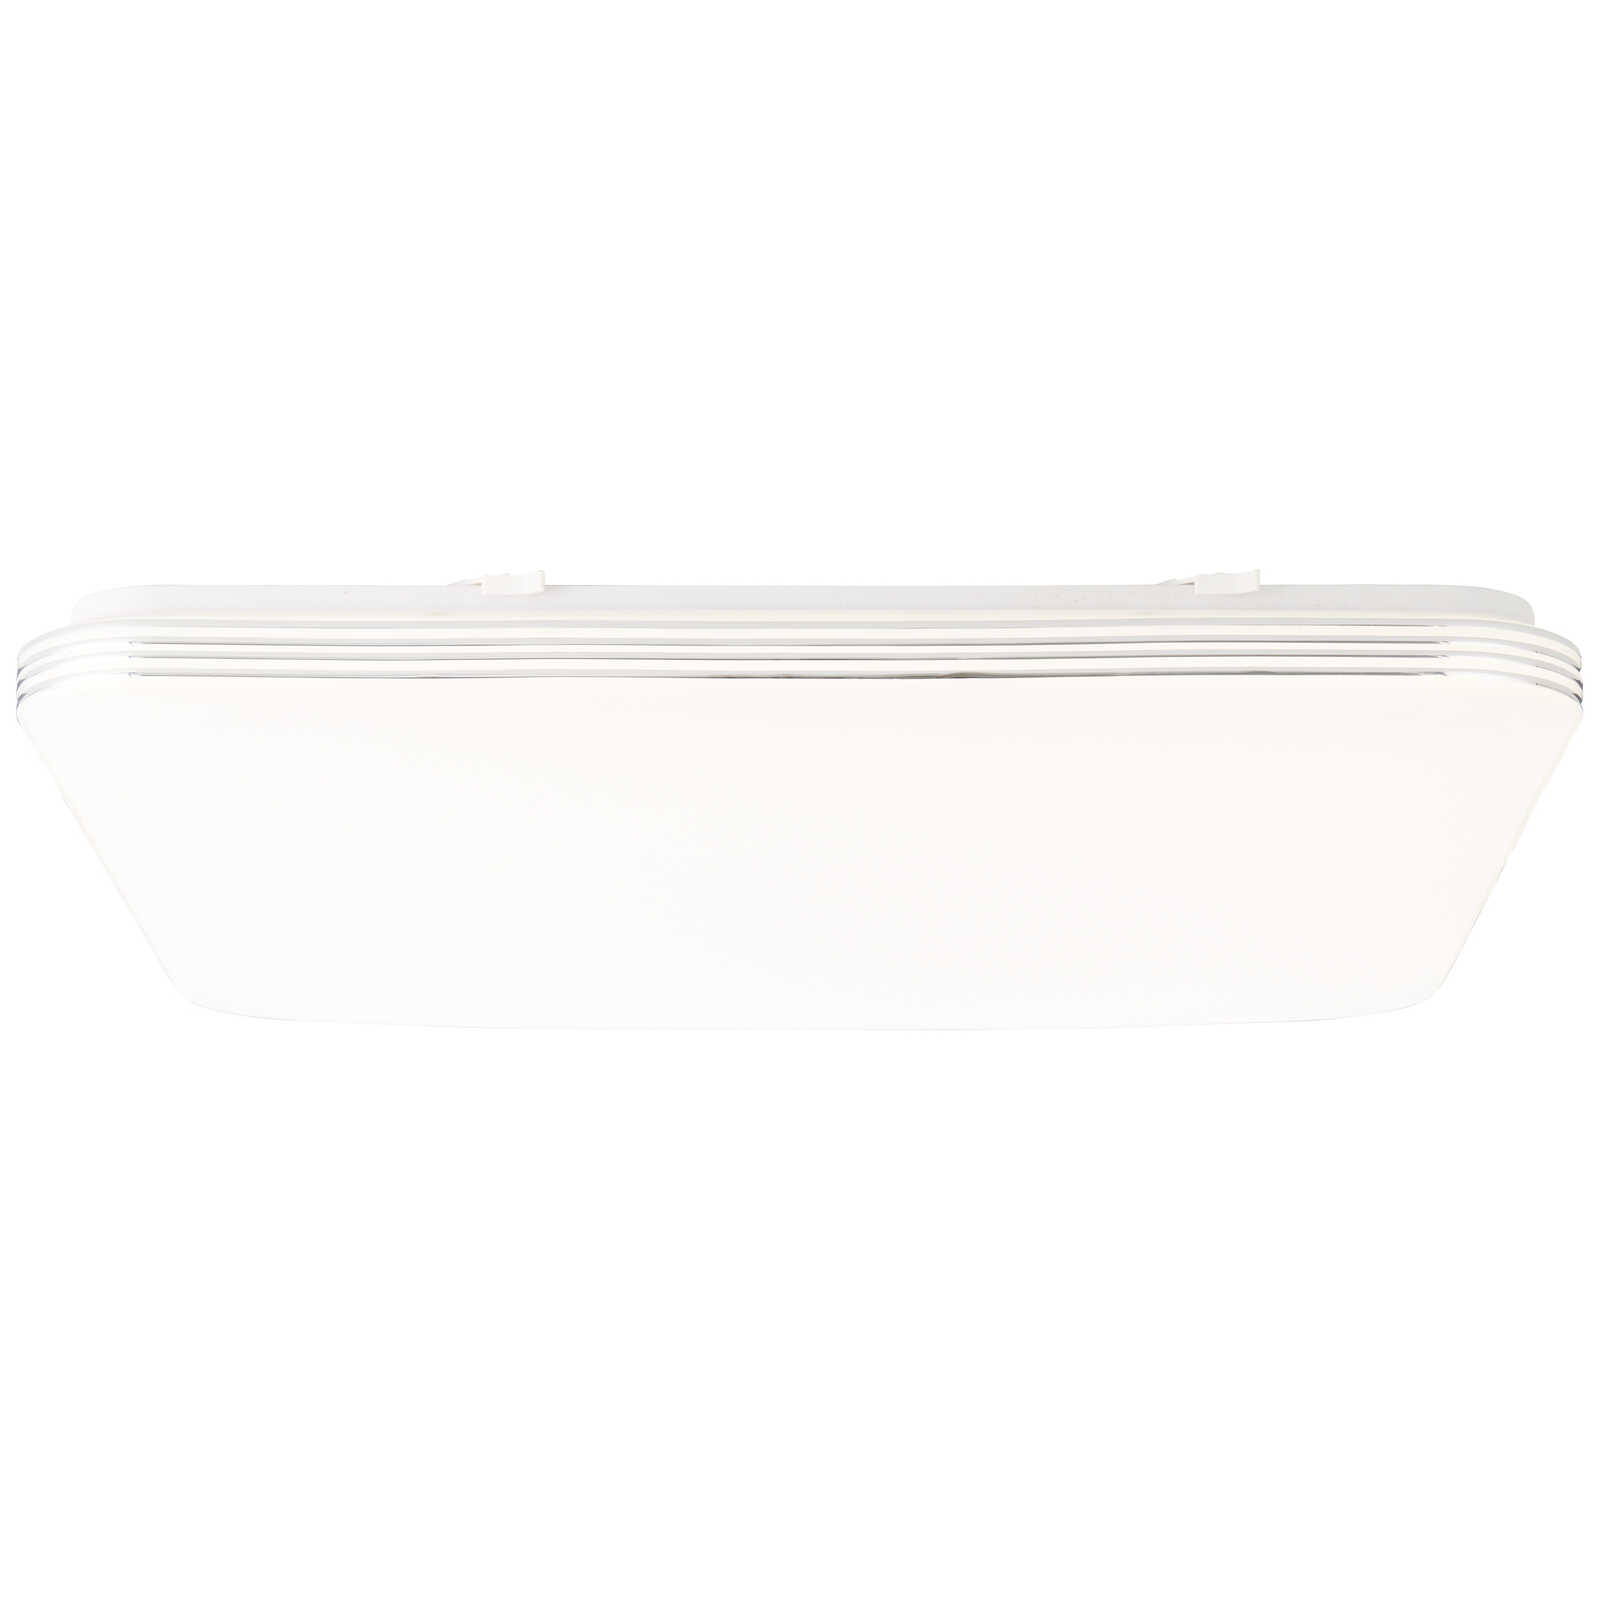             Lampada da parete e soffitto in plastica - Amelie - argento, bianco
        